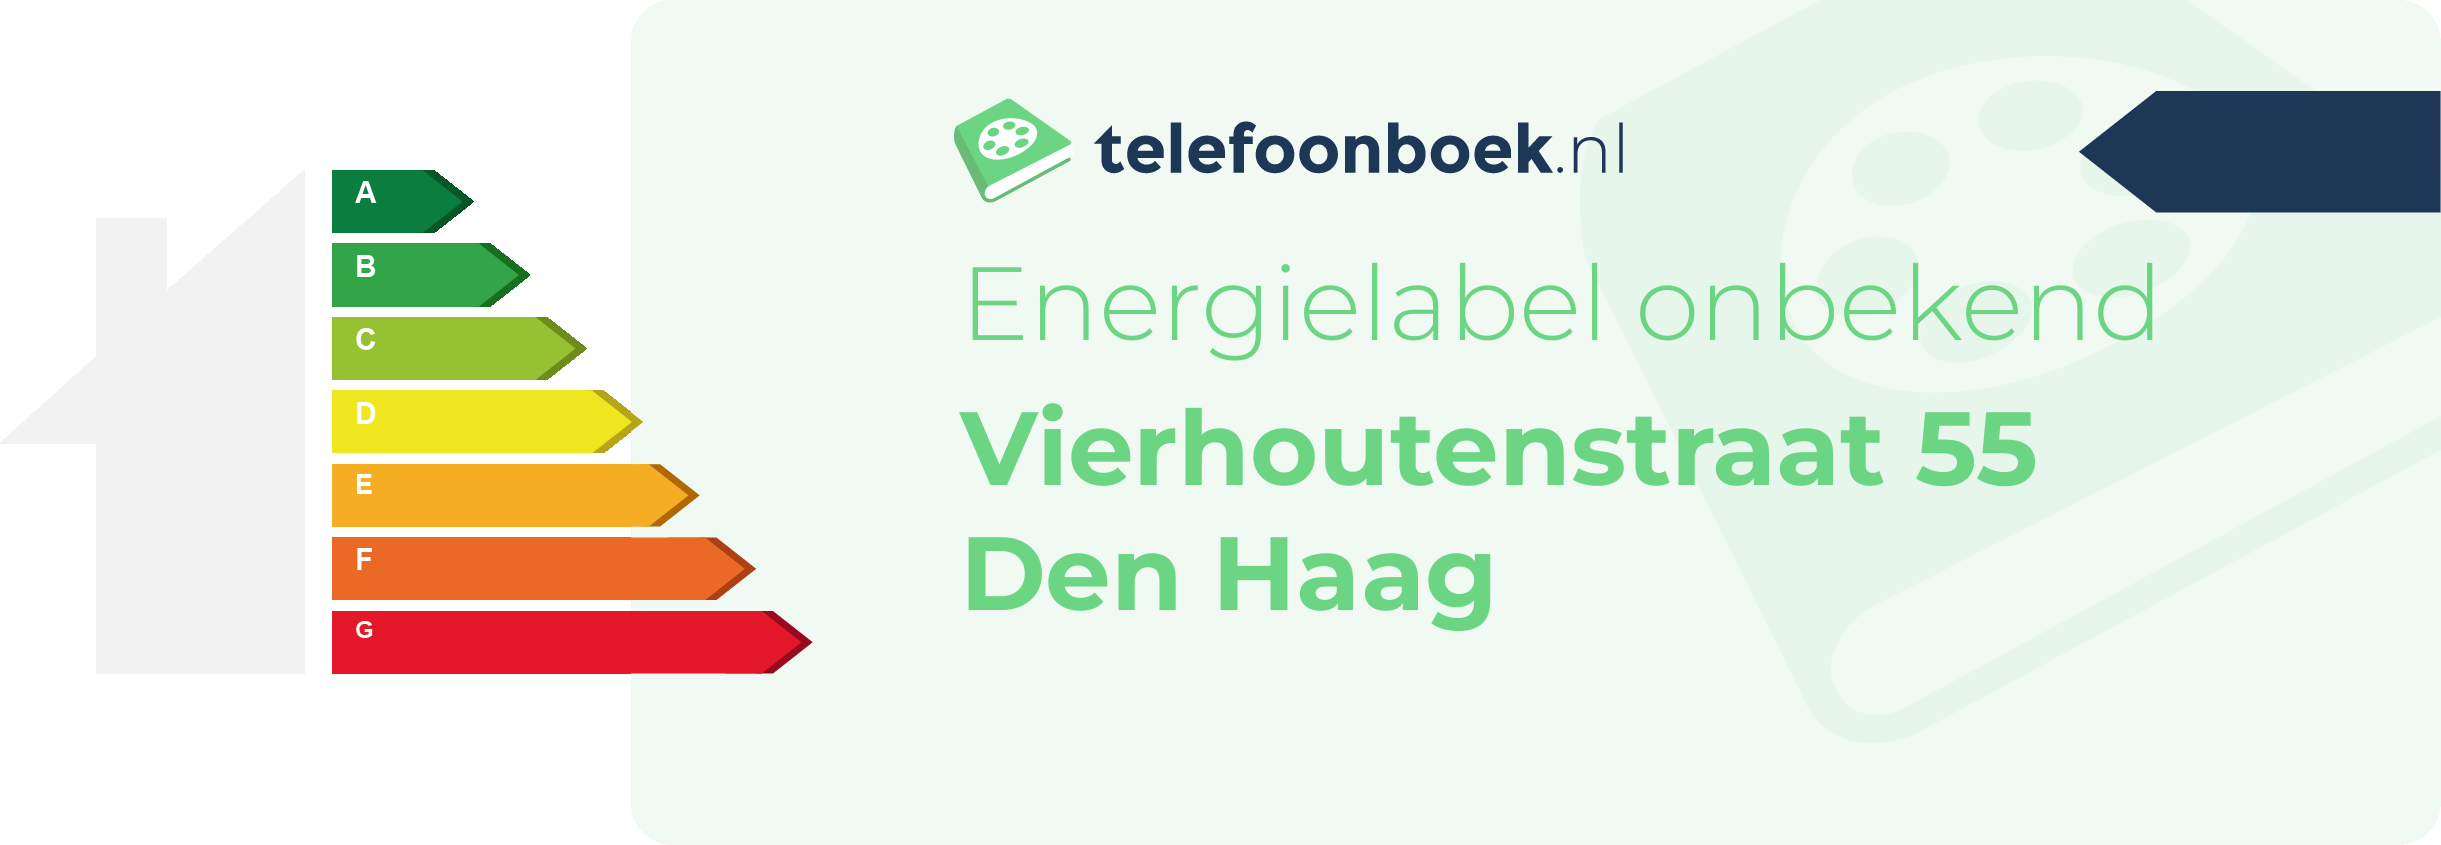 Energielabel Vierhoutenstraat 55 Den Haag